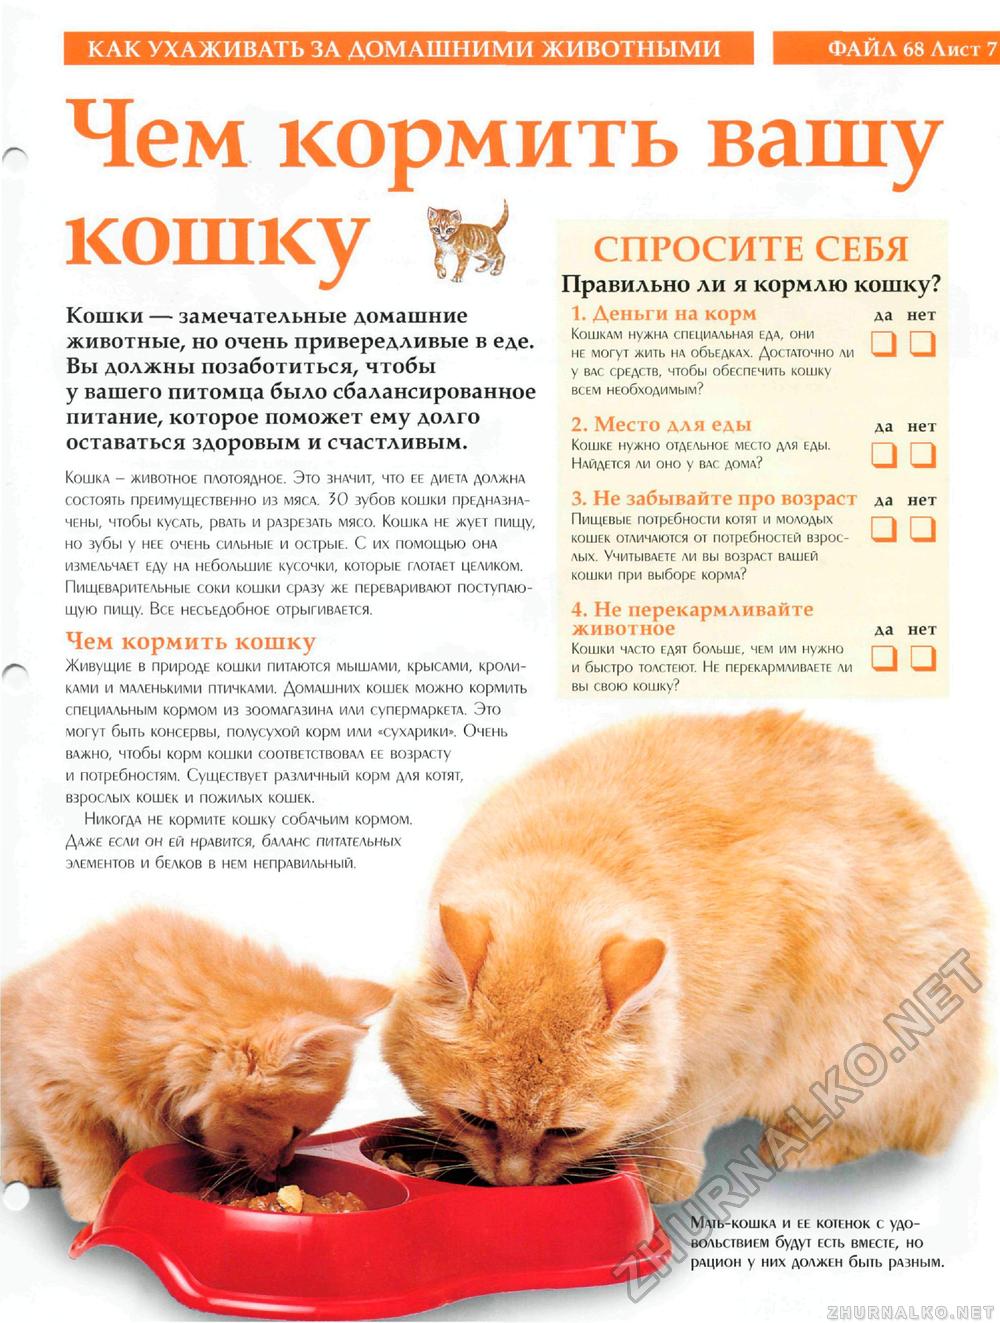 Советы по облегчению жизни для вашей пожилой кошки